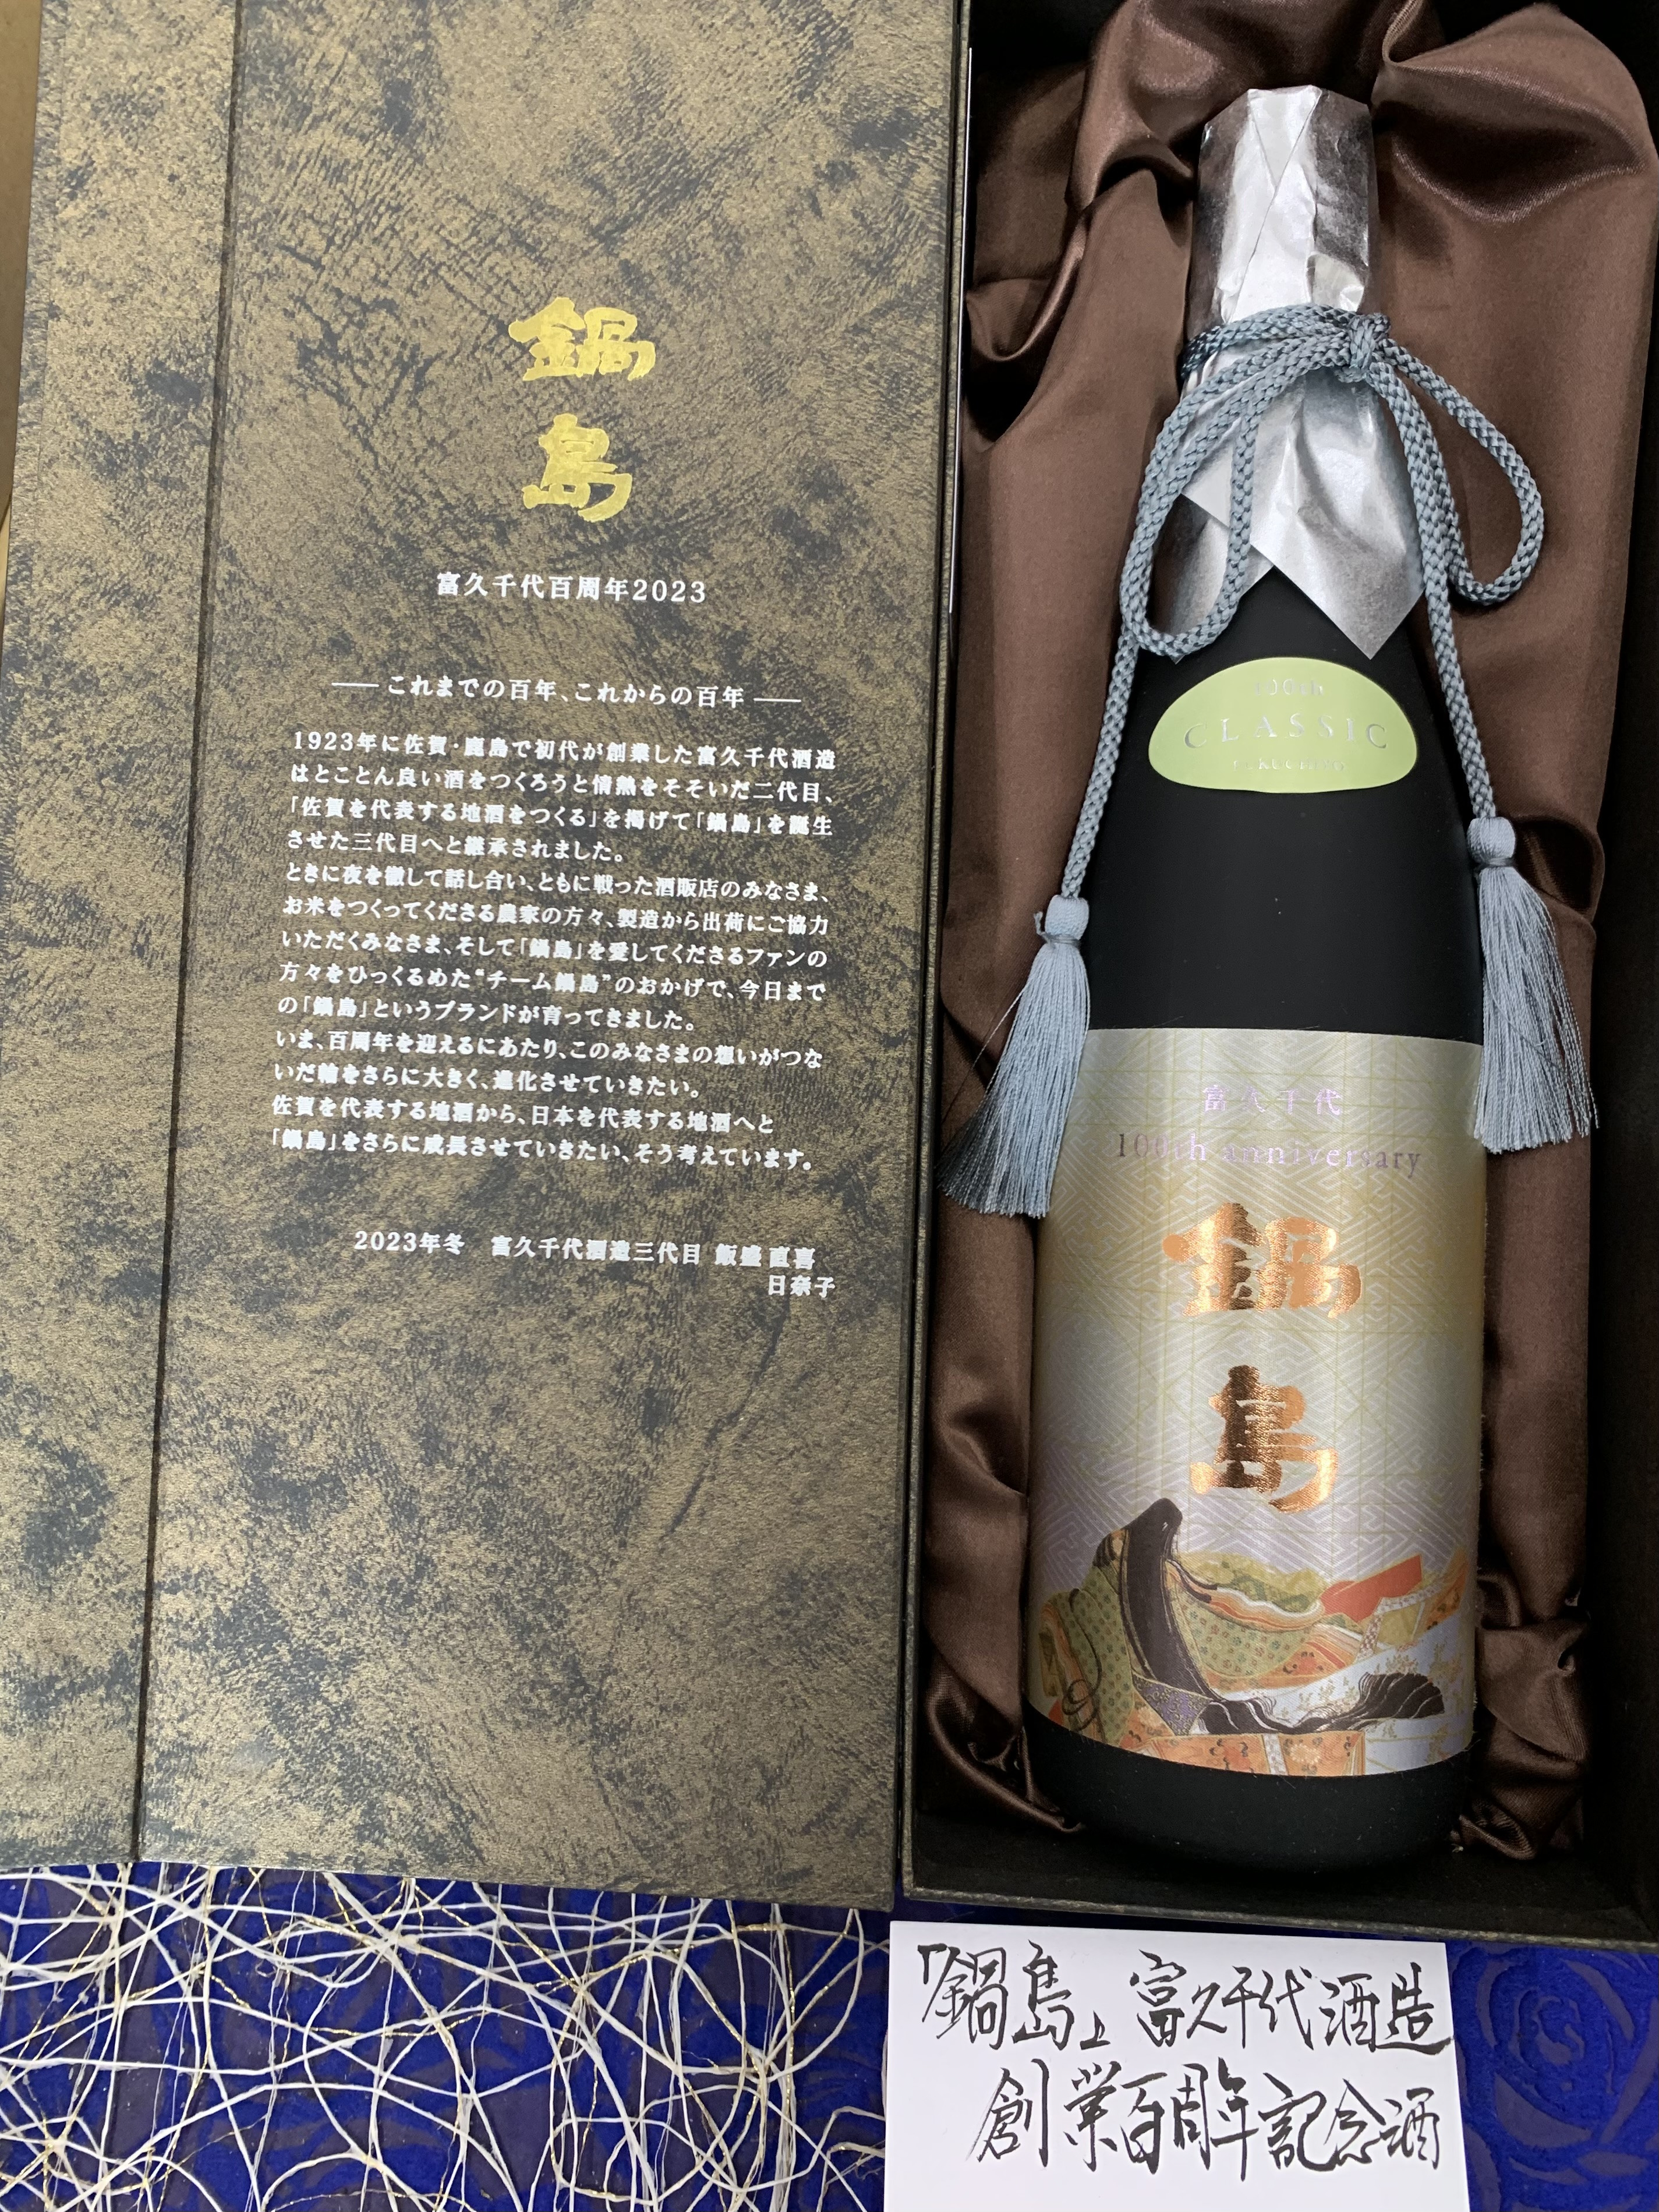 鍋島 100周年記念 100本限定 純米大吟醸 専用紙袋付き - 日本酒